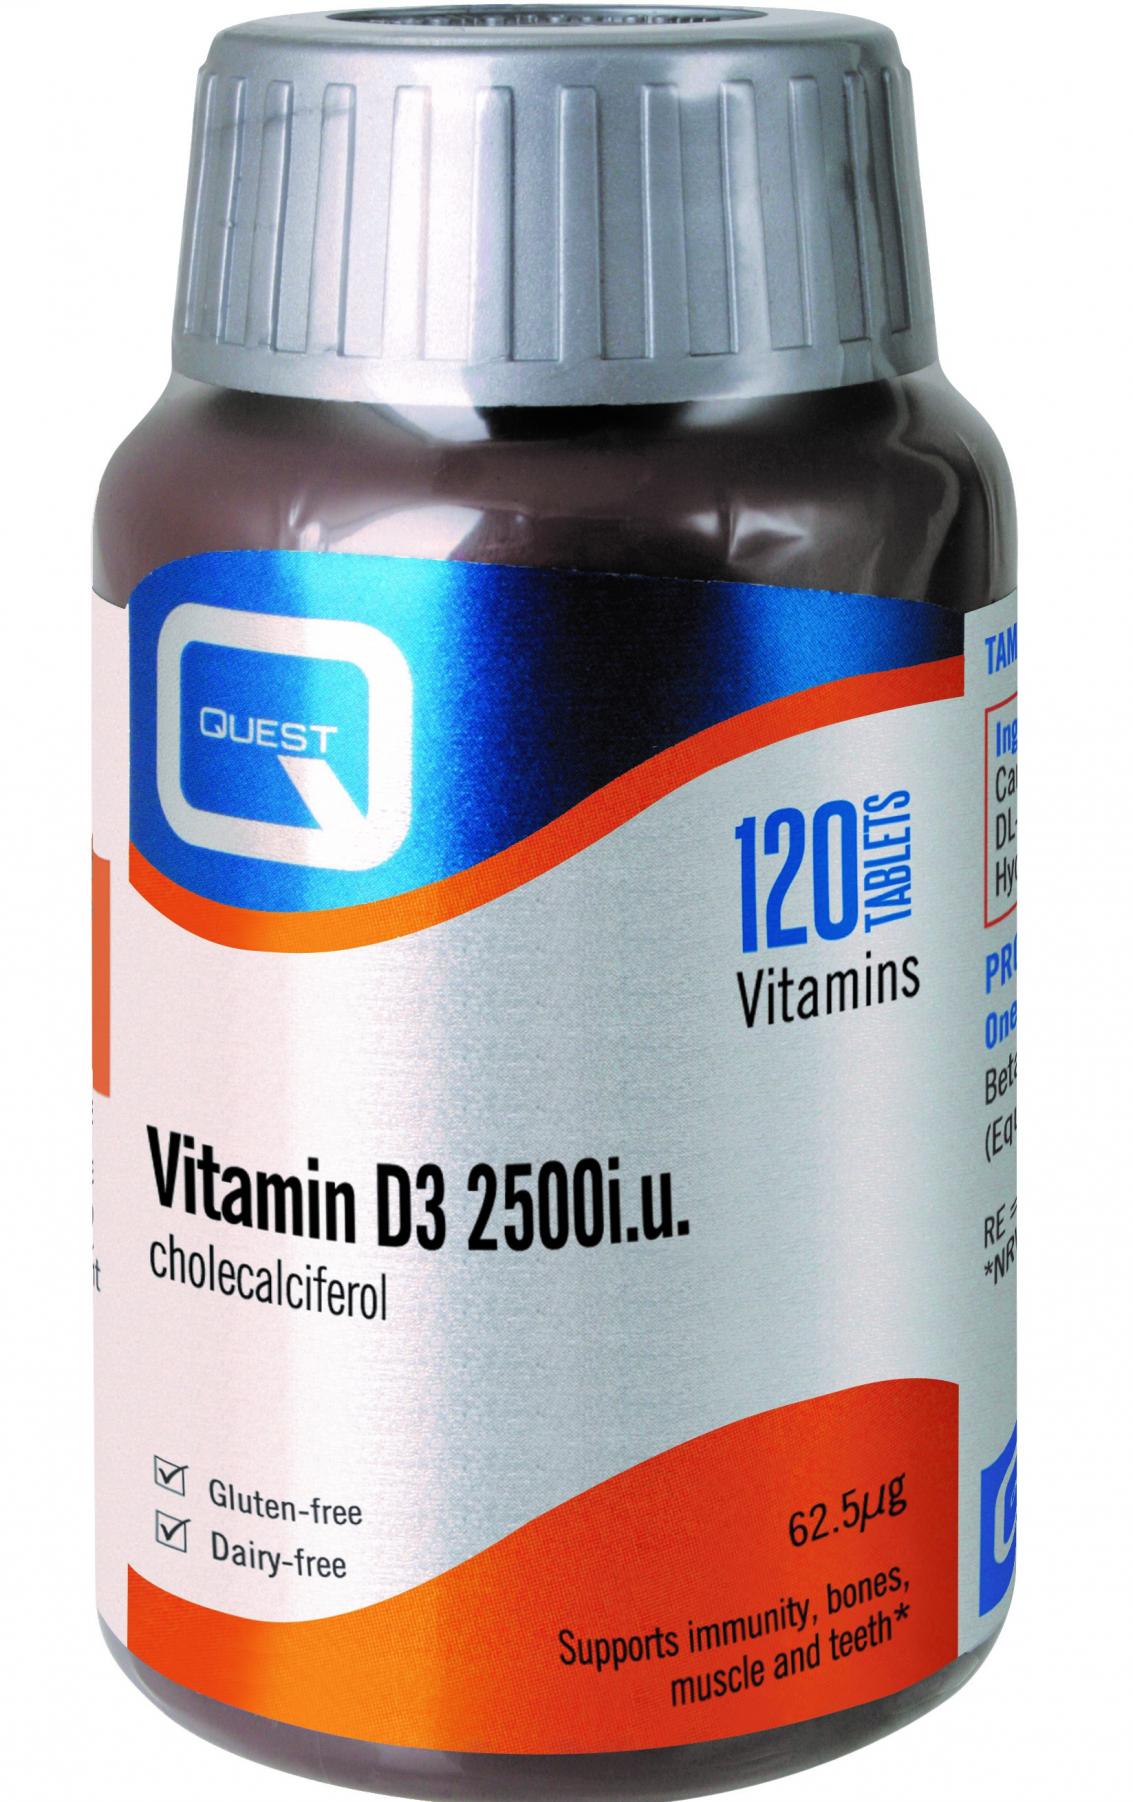 Quest Vitamins Vitamin D3 2500iu Cholecalciferol